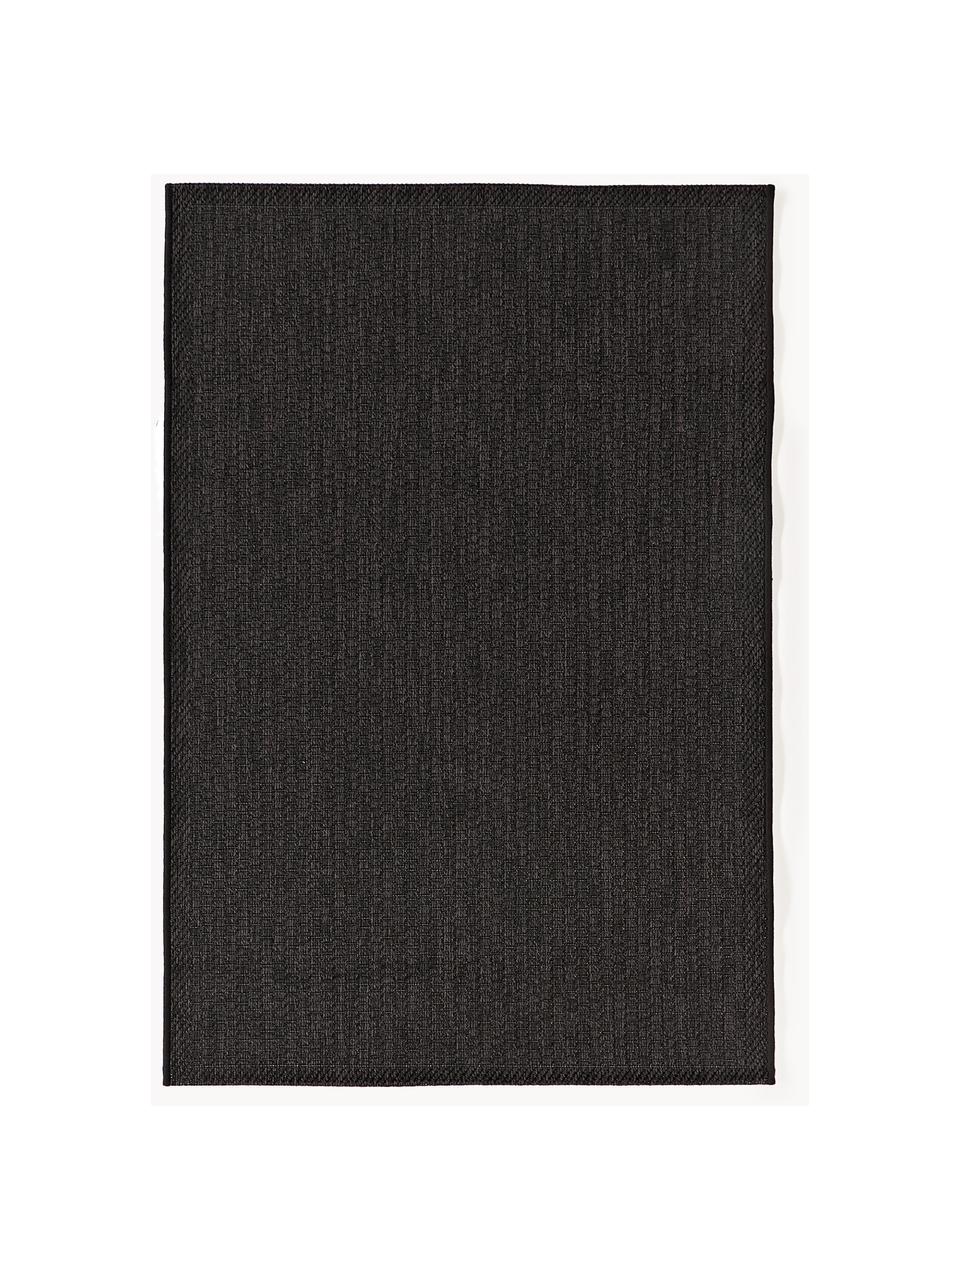 Interiérový/exteriérový koberec Toronto, 100 % polypropylen, Antracitová, Š 80 cm, D 150 cm (velikost XS)